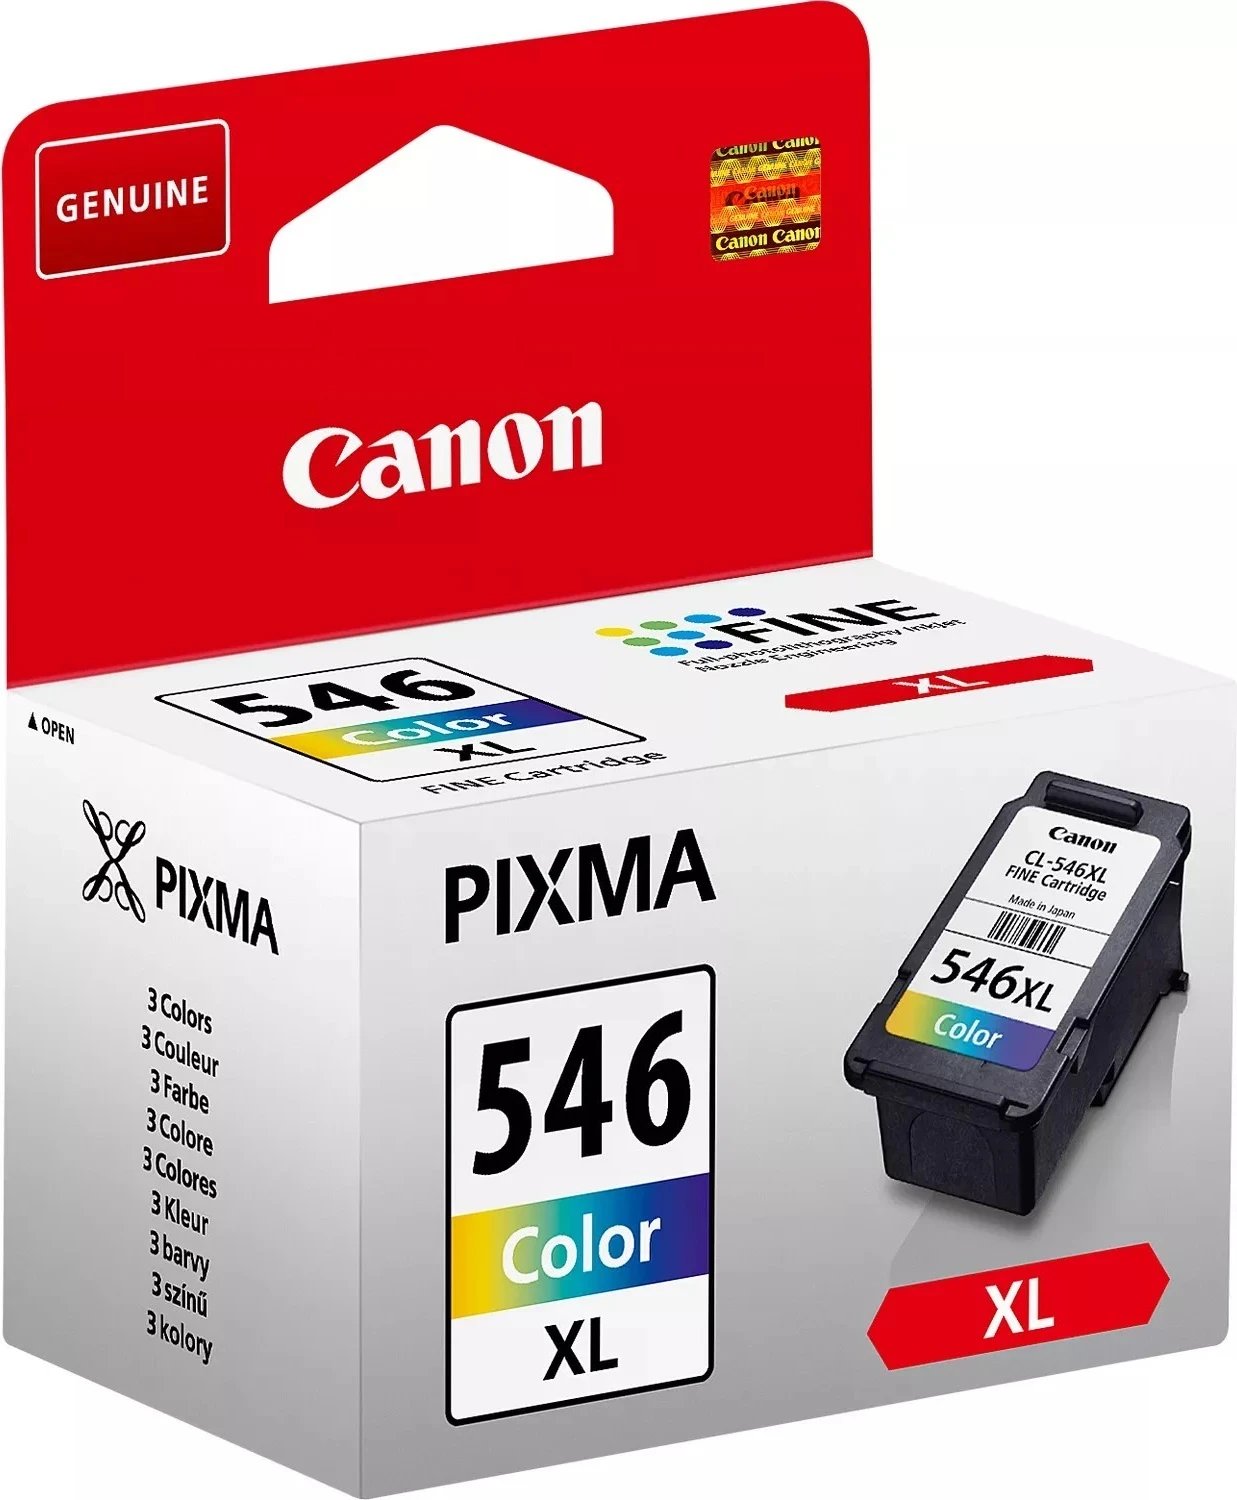 Ngjyrë për printer Canon CL 546, XL